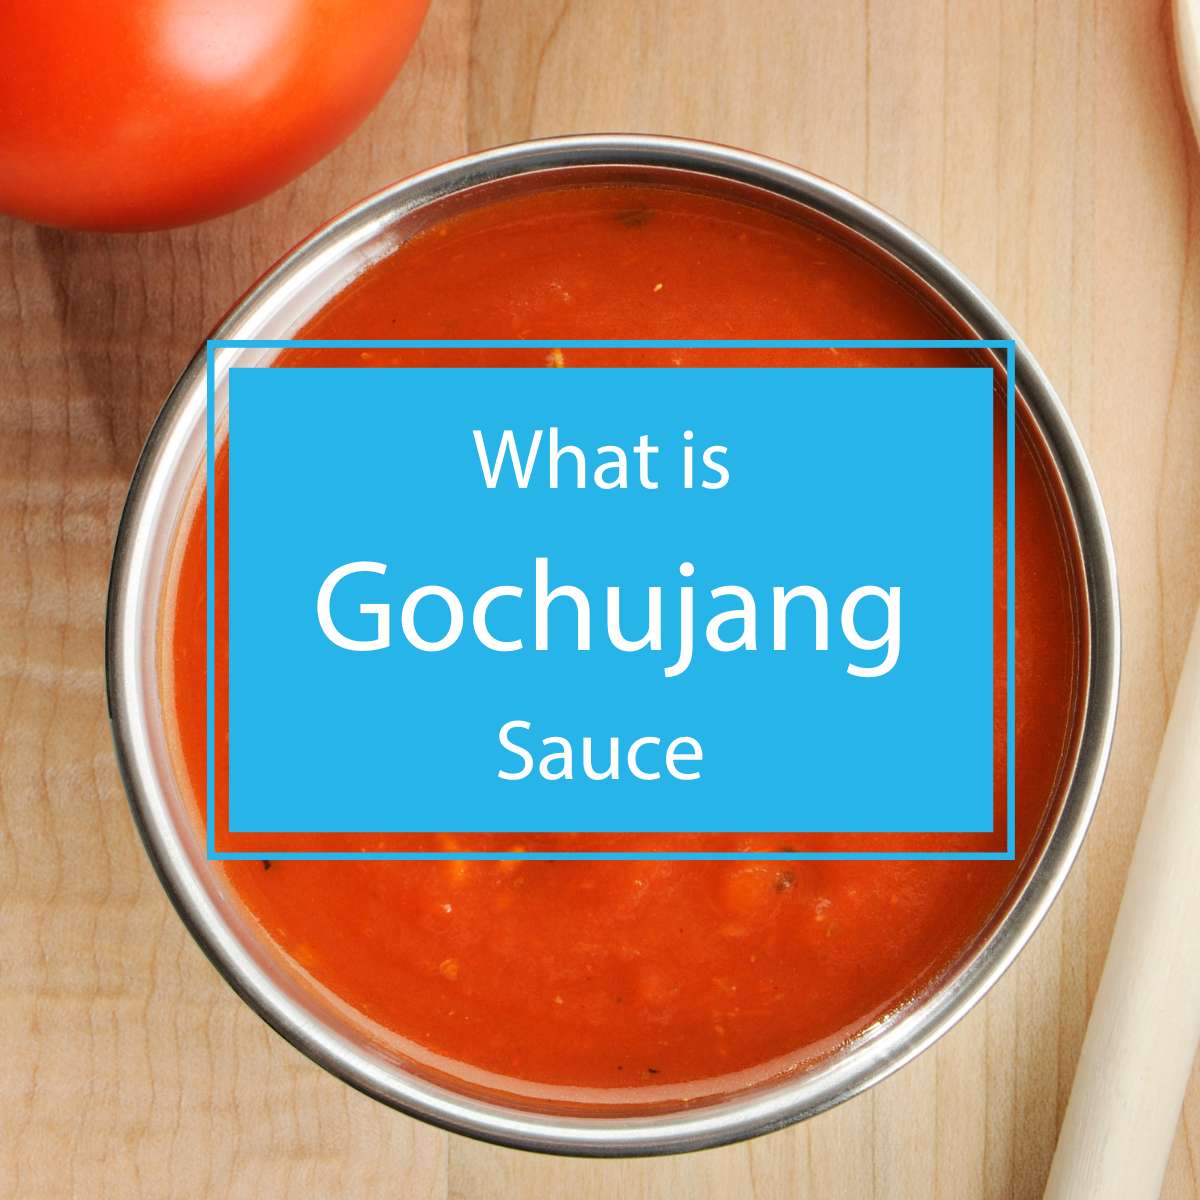 What is gochujang sauce